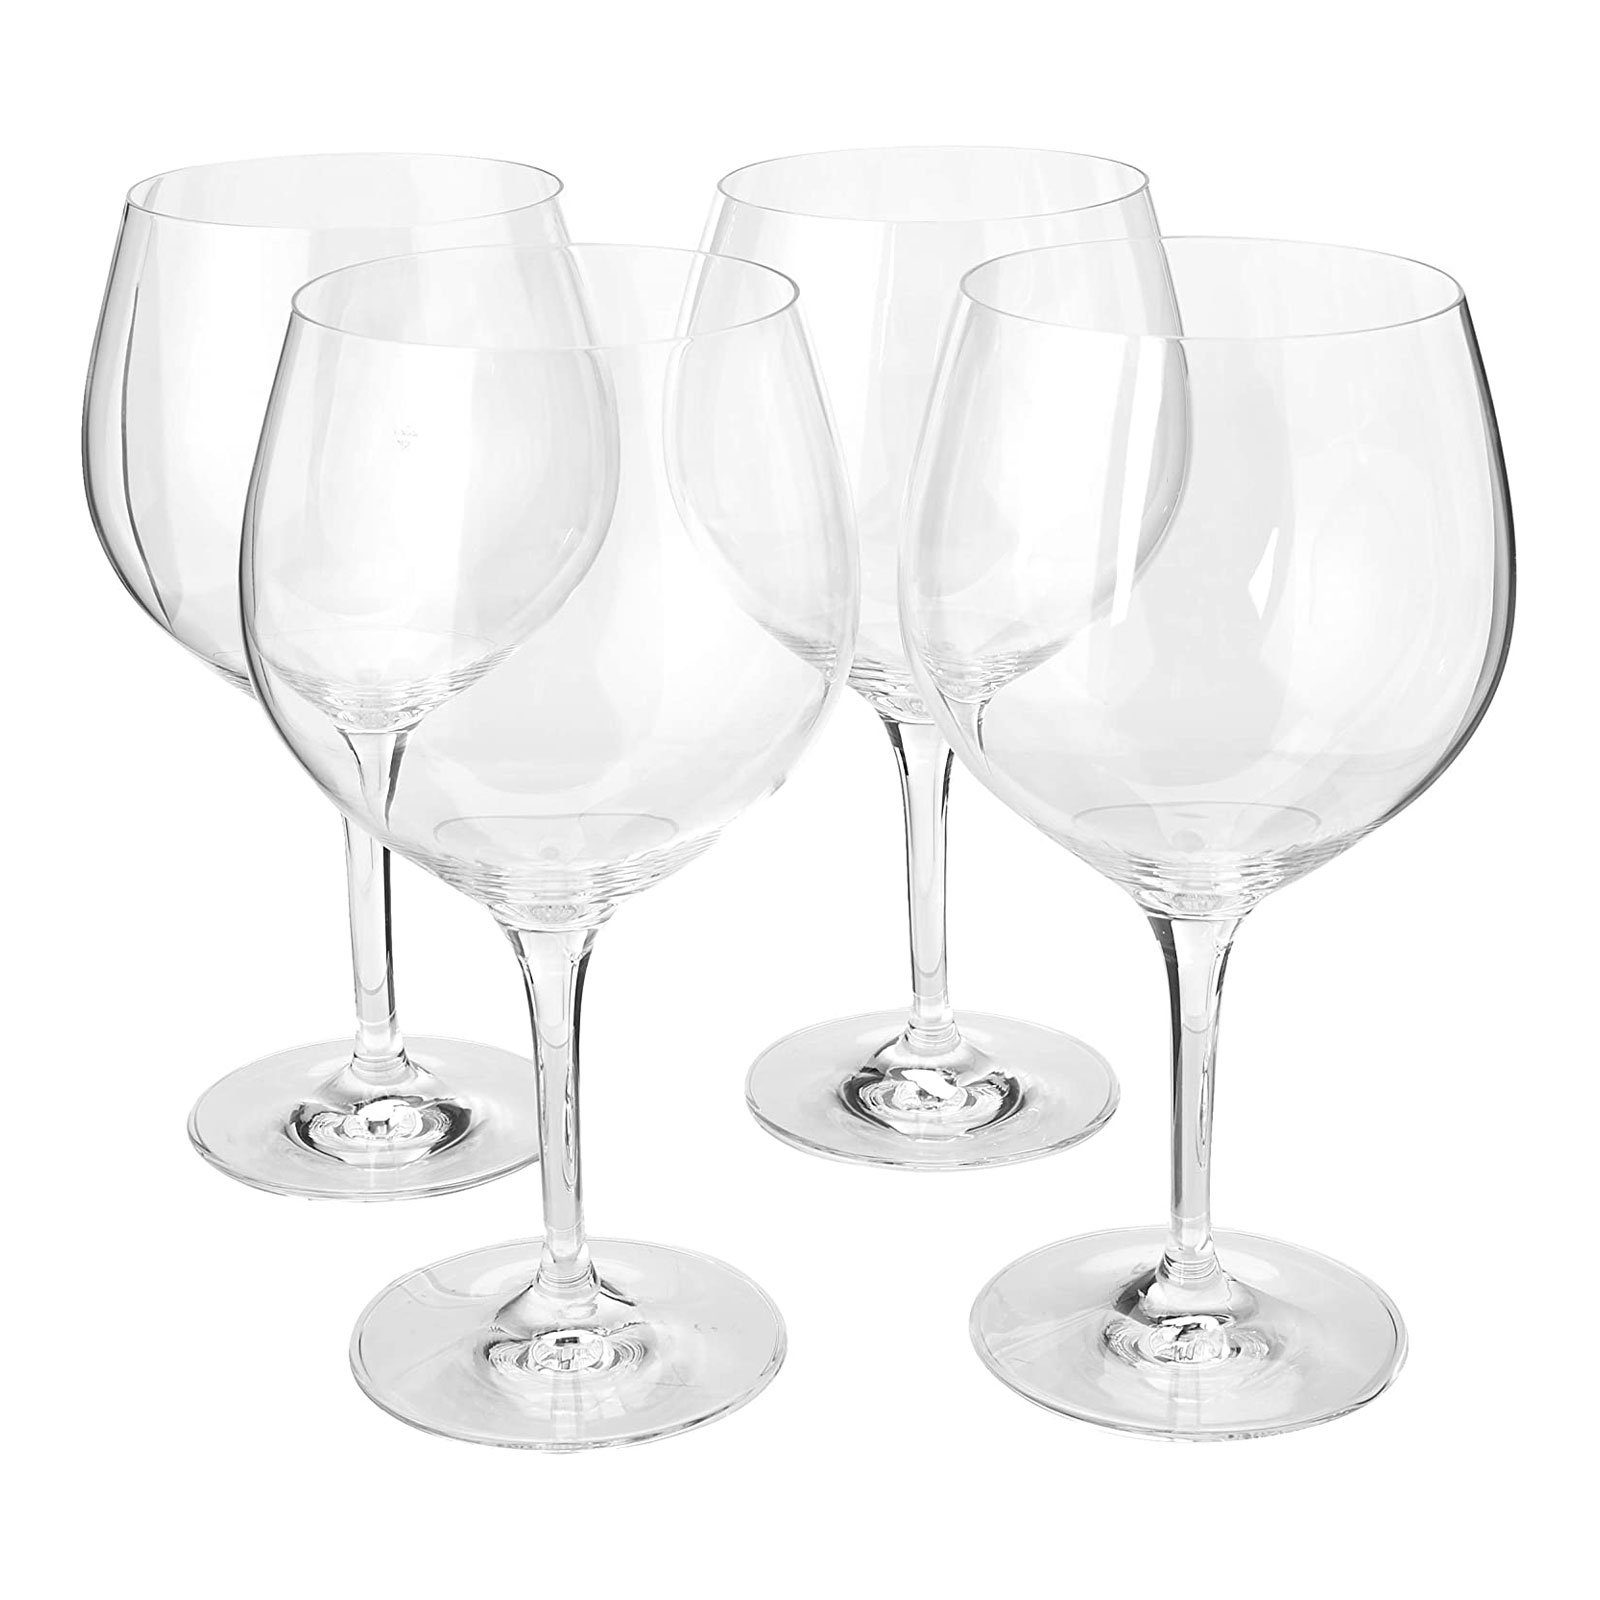 SPIEGELAU Glas Special teilig, Bruchfestigkeit Glasses, Erhöhte 4